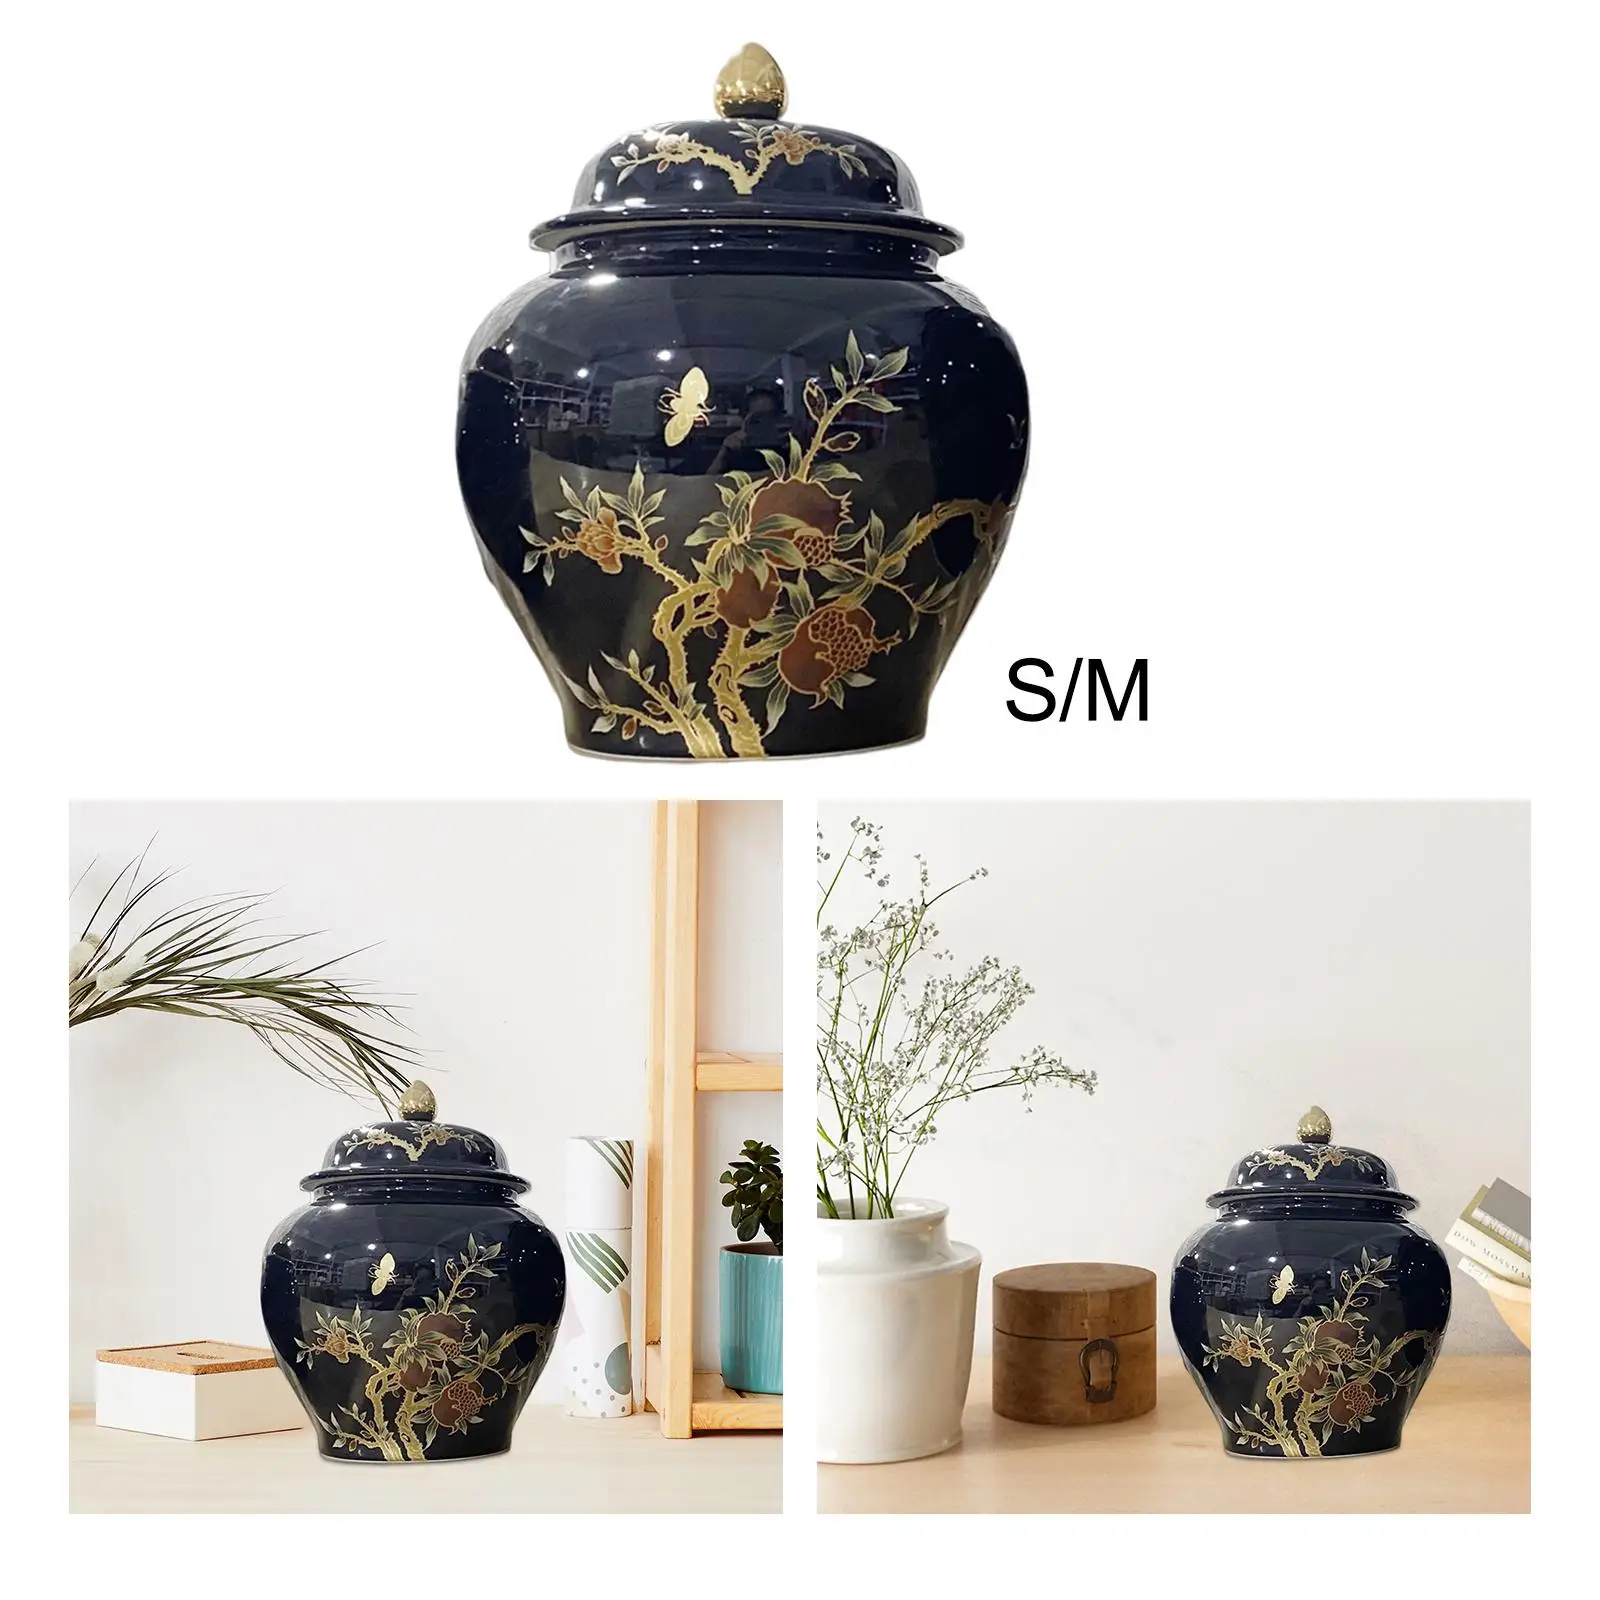 Porcelain Ginger Jar Tea Storage Jar Plants Holder Floral Arrangement Ornaments for Home Bookshelf Party Livingroom Decoration